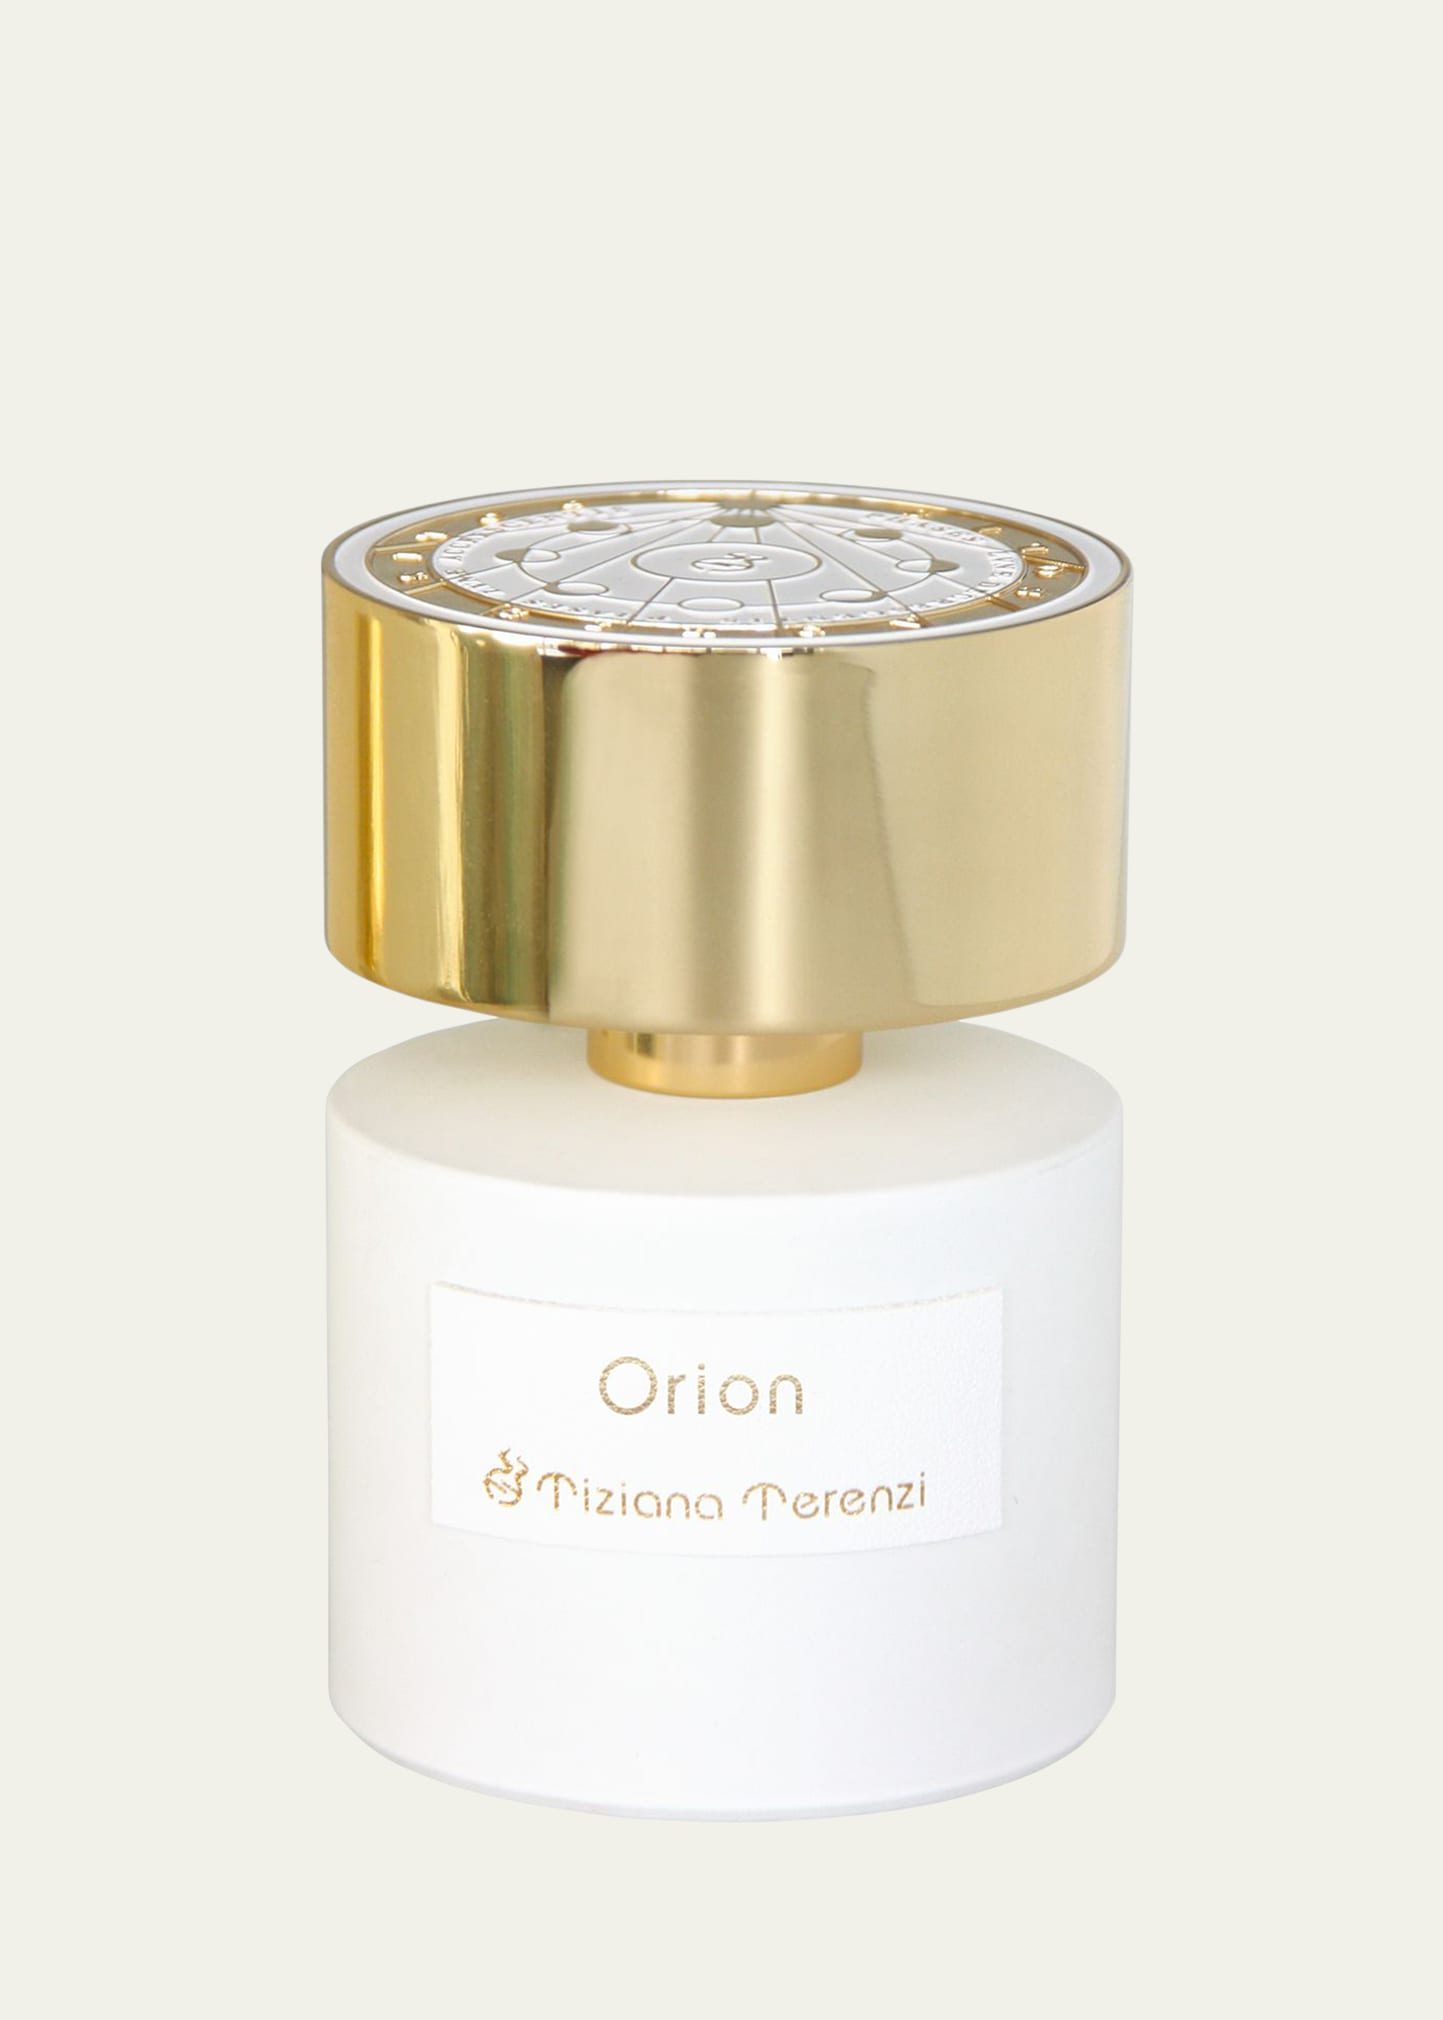 Orion Extrait de Parfum, 3.4 oz./ 100 mL